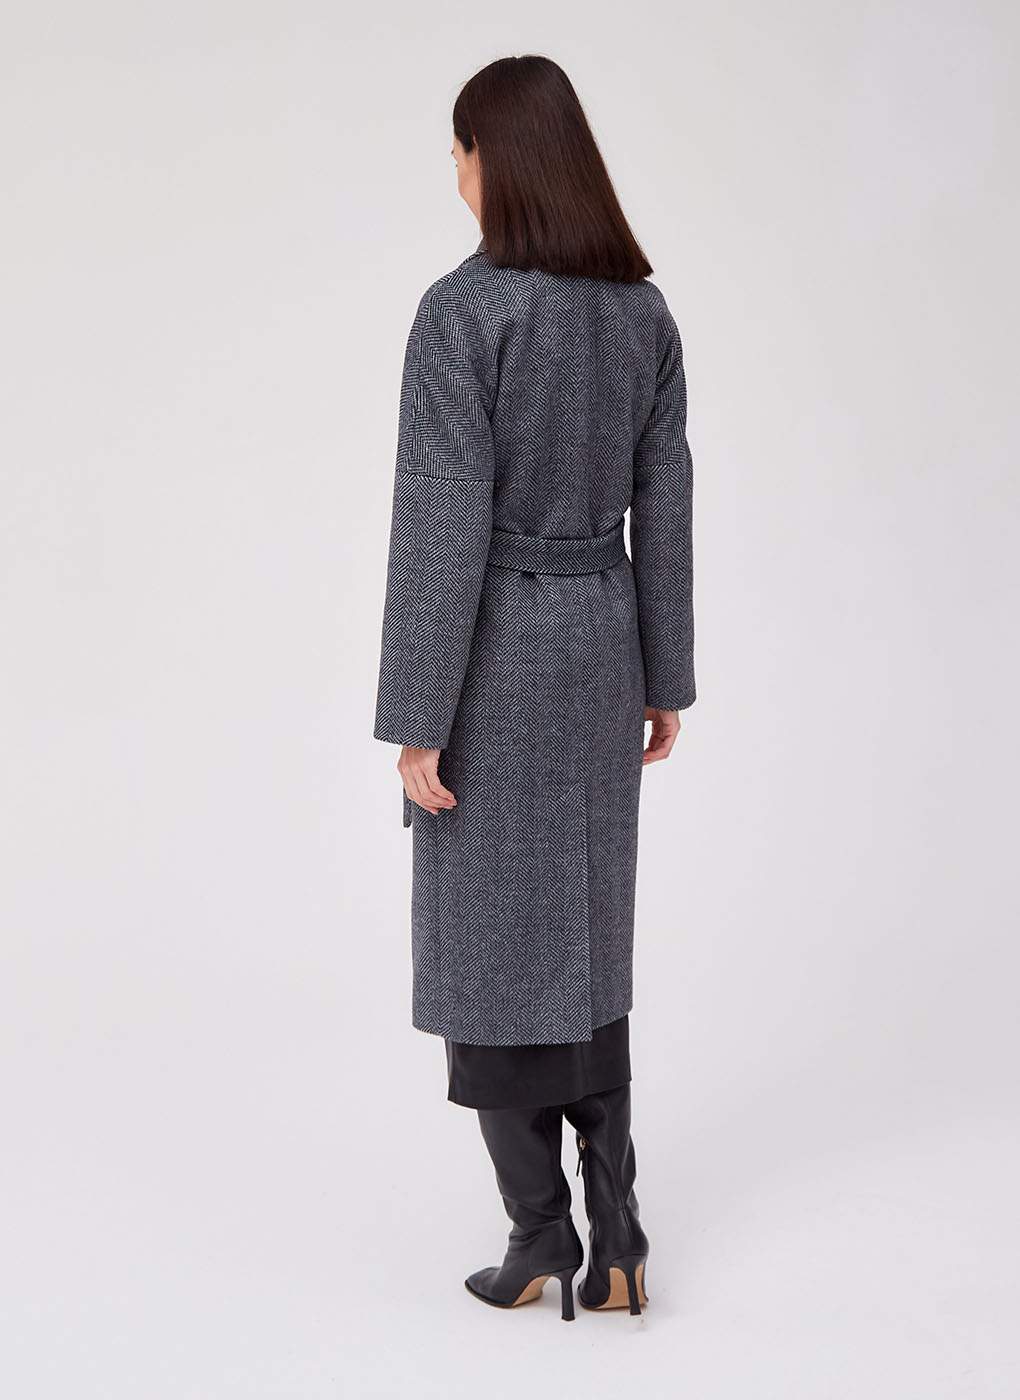 Пальто женское Giulia Rosetti 59789 черное 46 RU